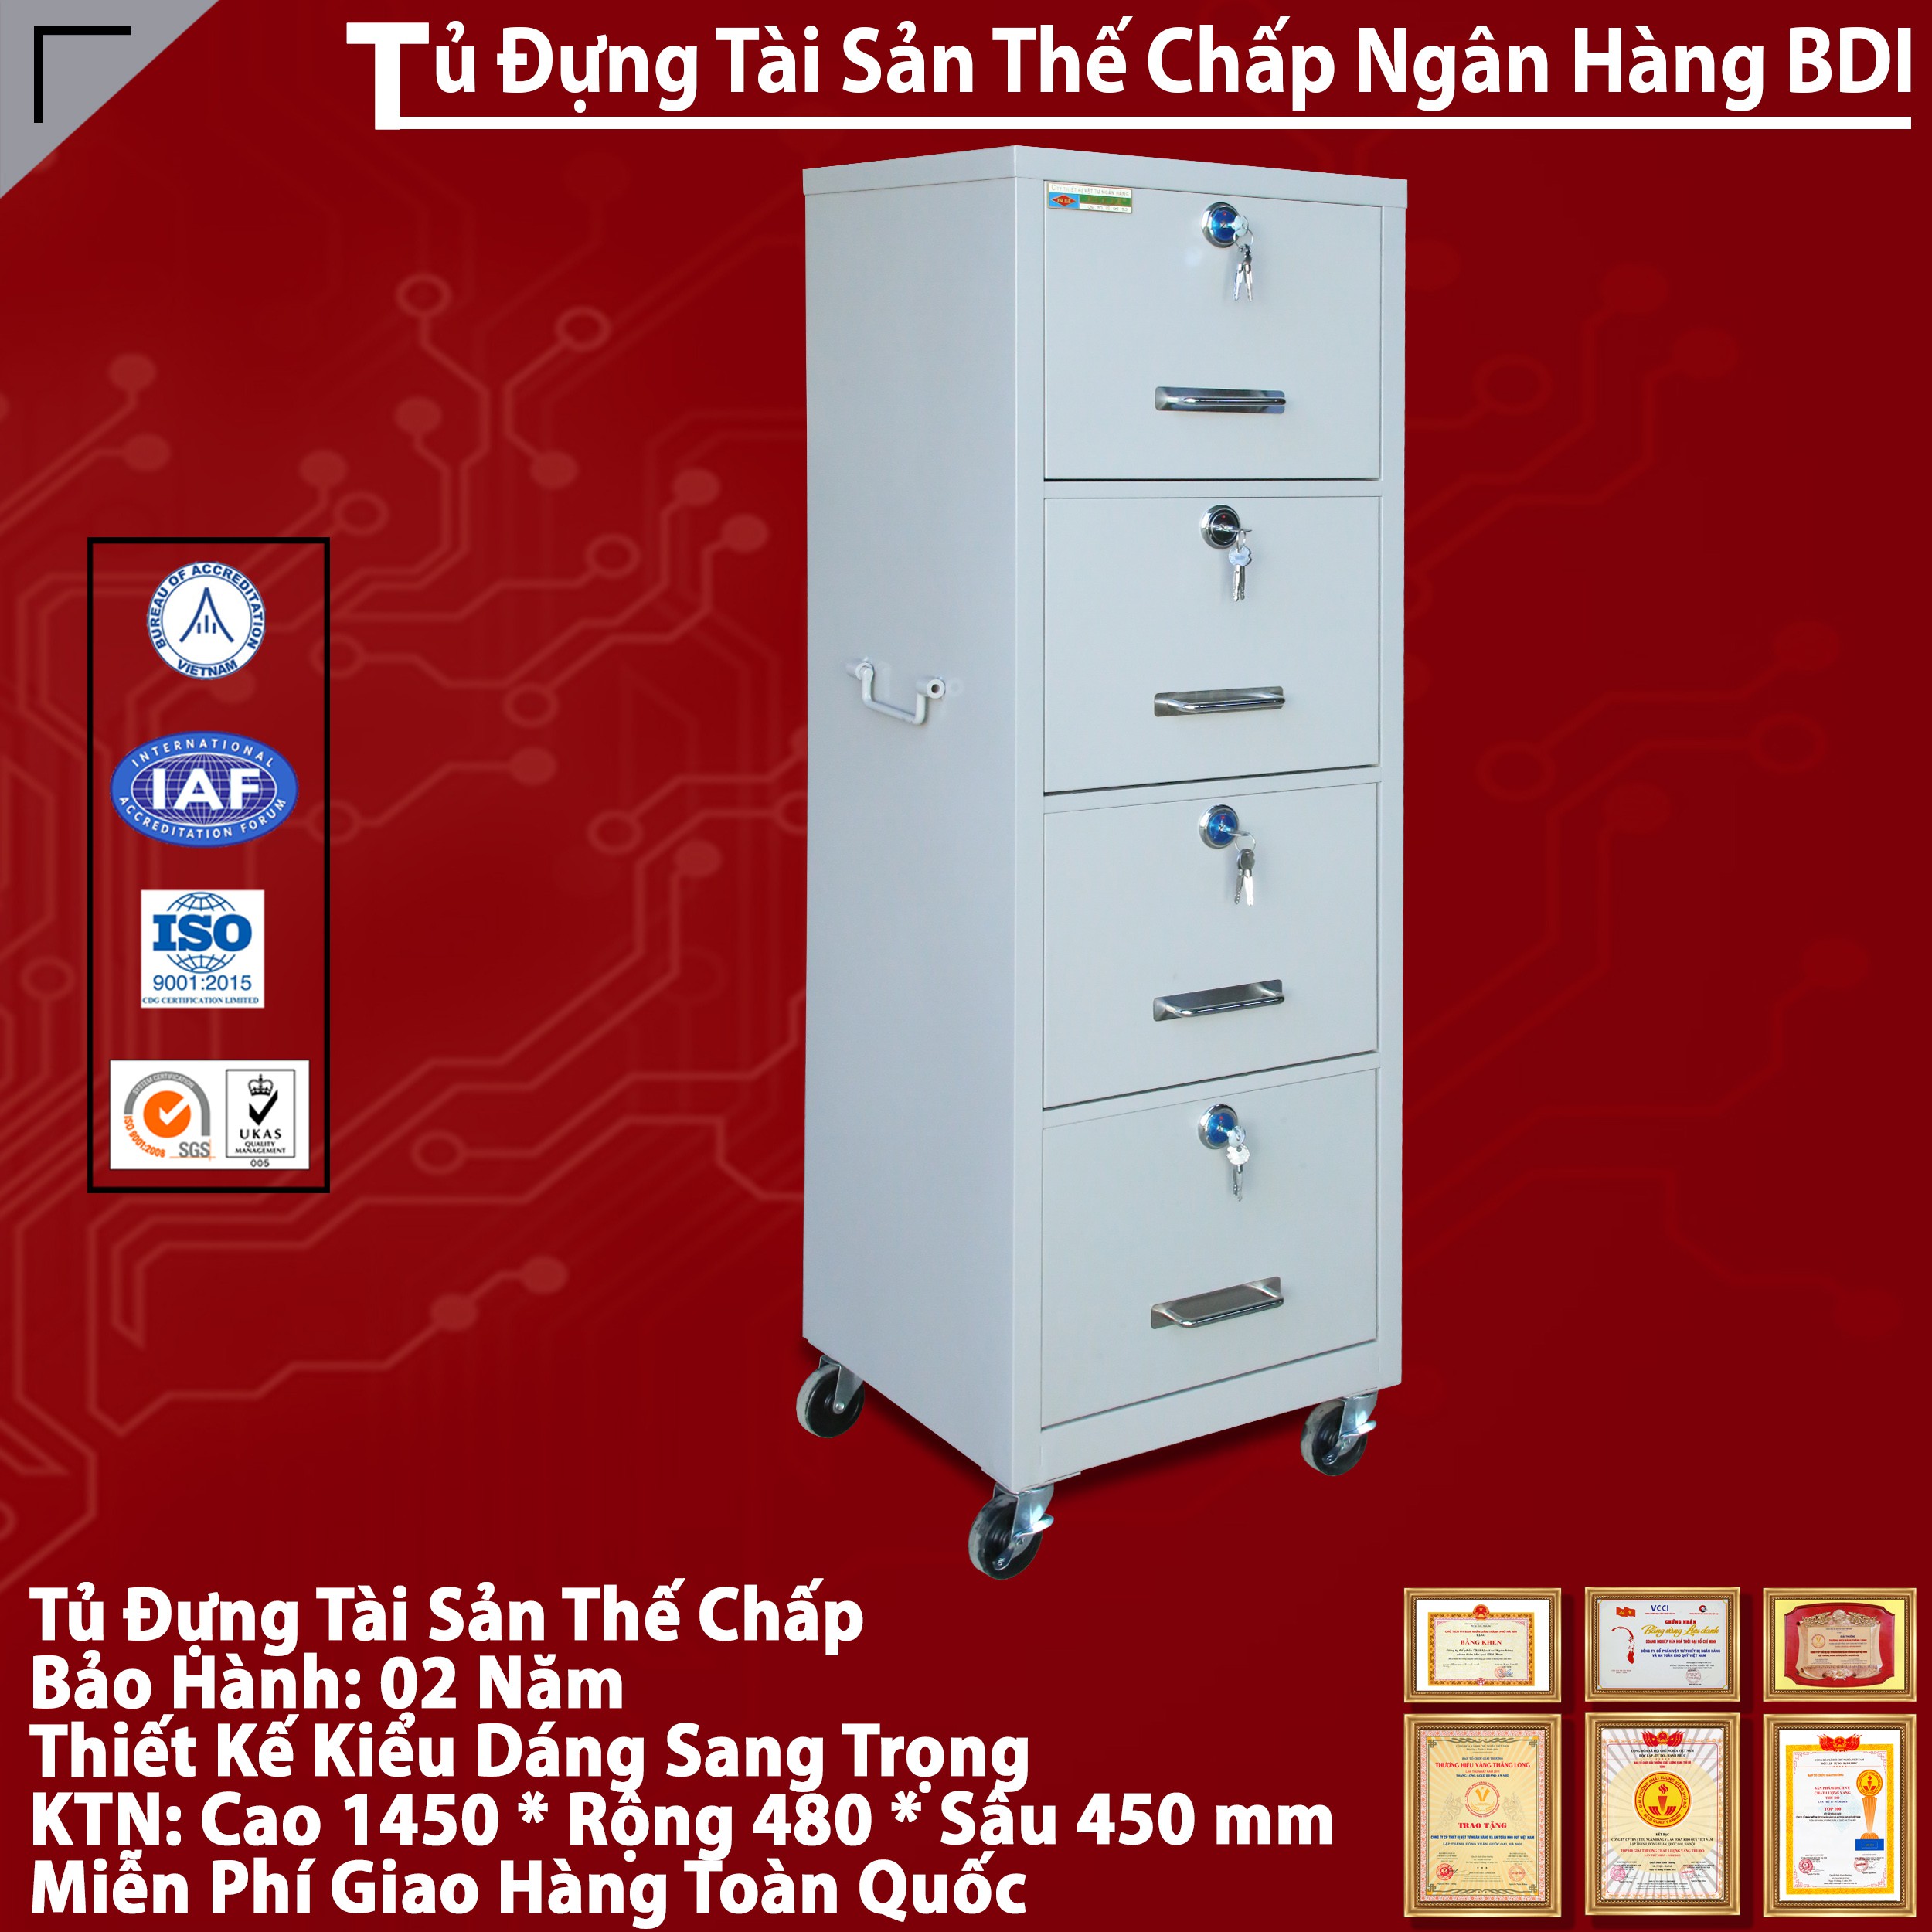 Tu Dung Tai San The Chap Chinh Hang